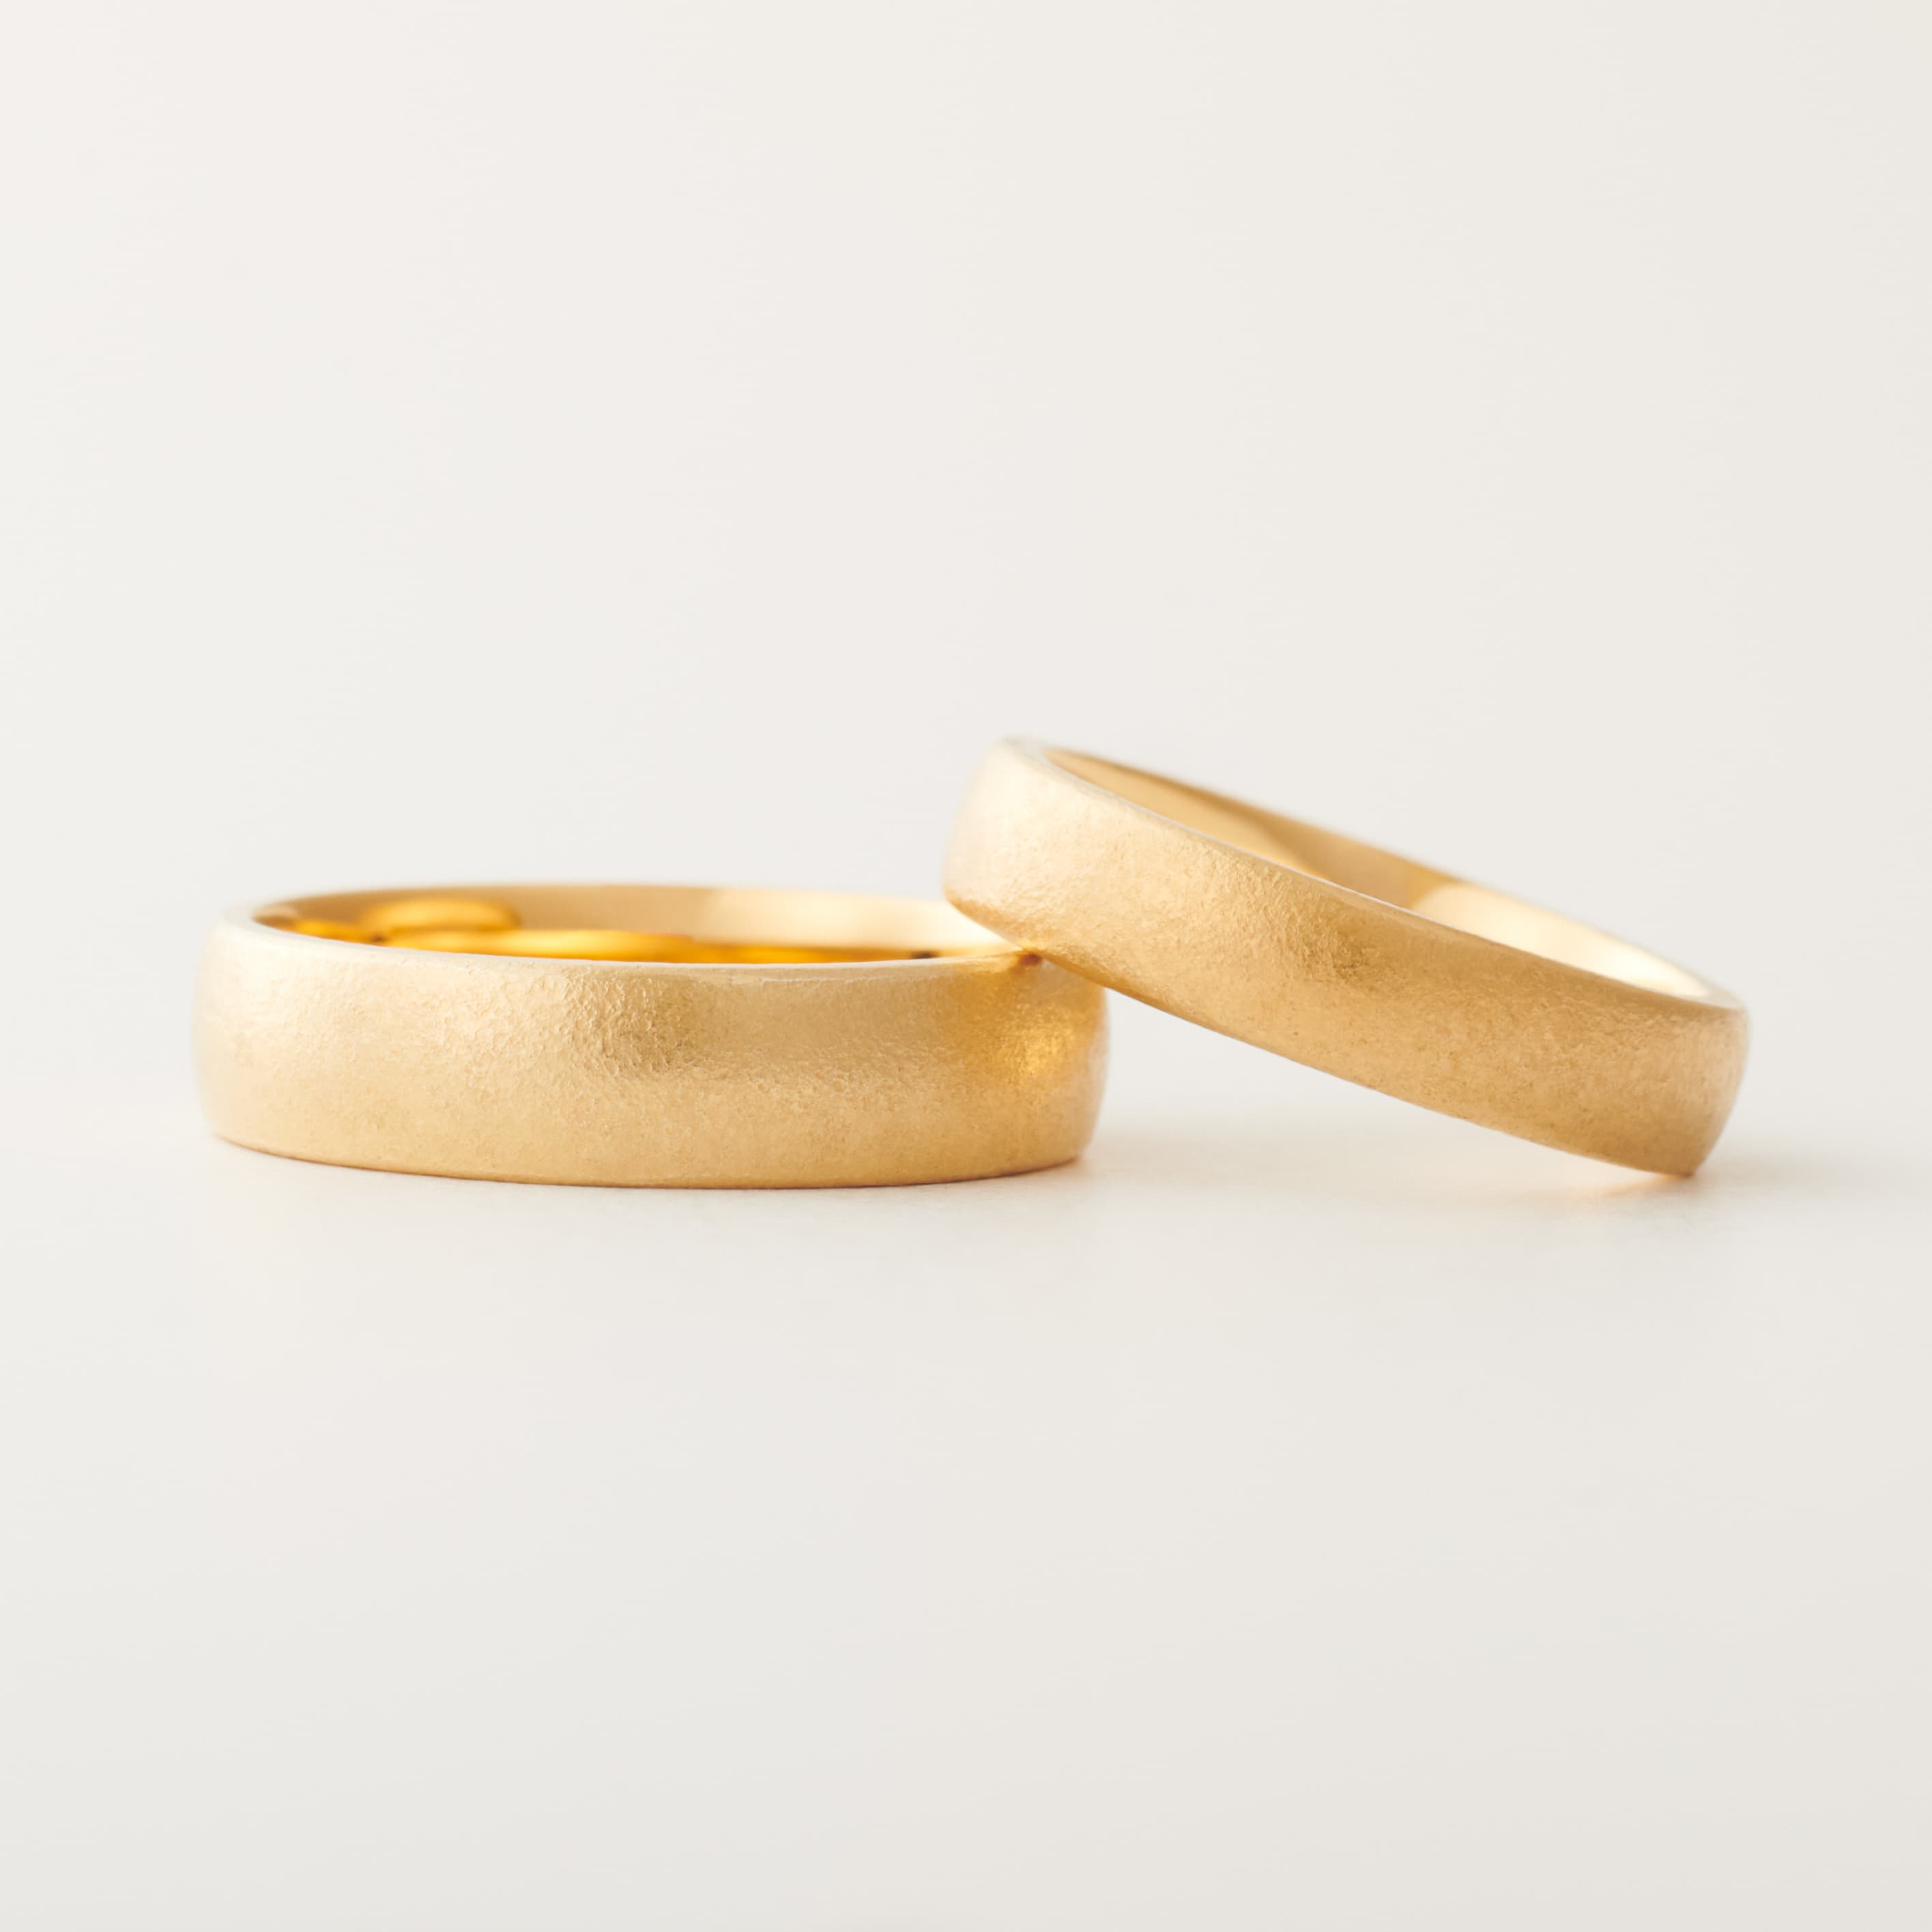 結婚指輪“クラフト“ | 巌のように固い夫婦の絆を表すロチア。使い込んだヴィンテージ感のあるテクスチャは、指輪の表情にこだわるithだけのオリジナルです。